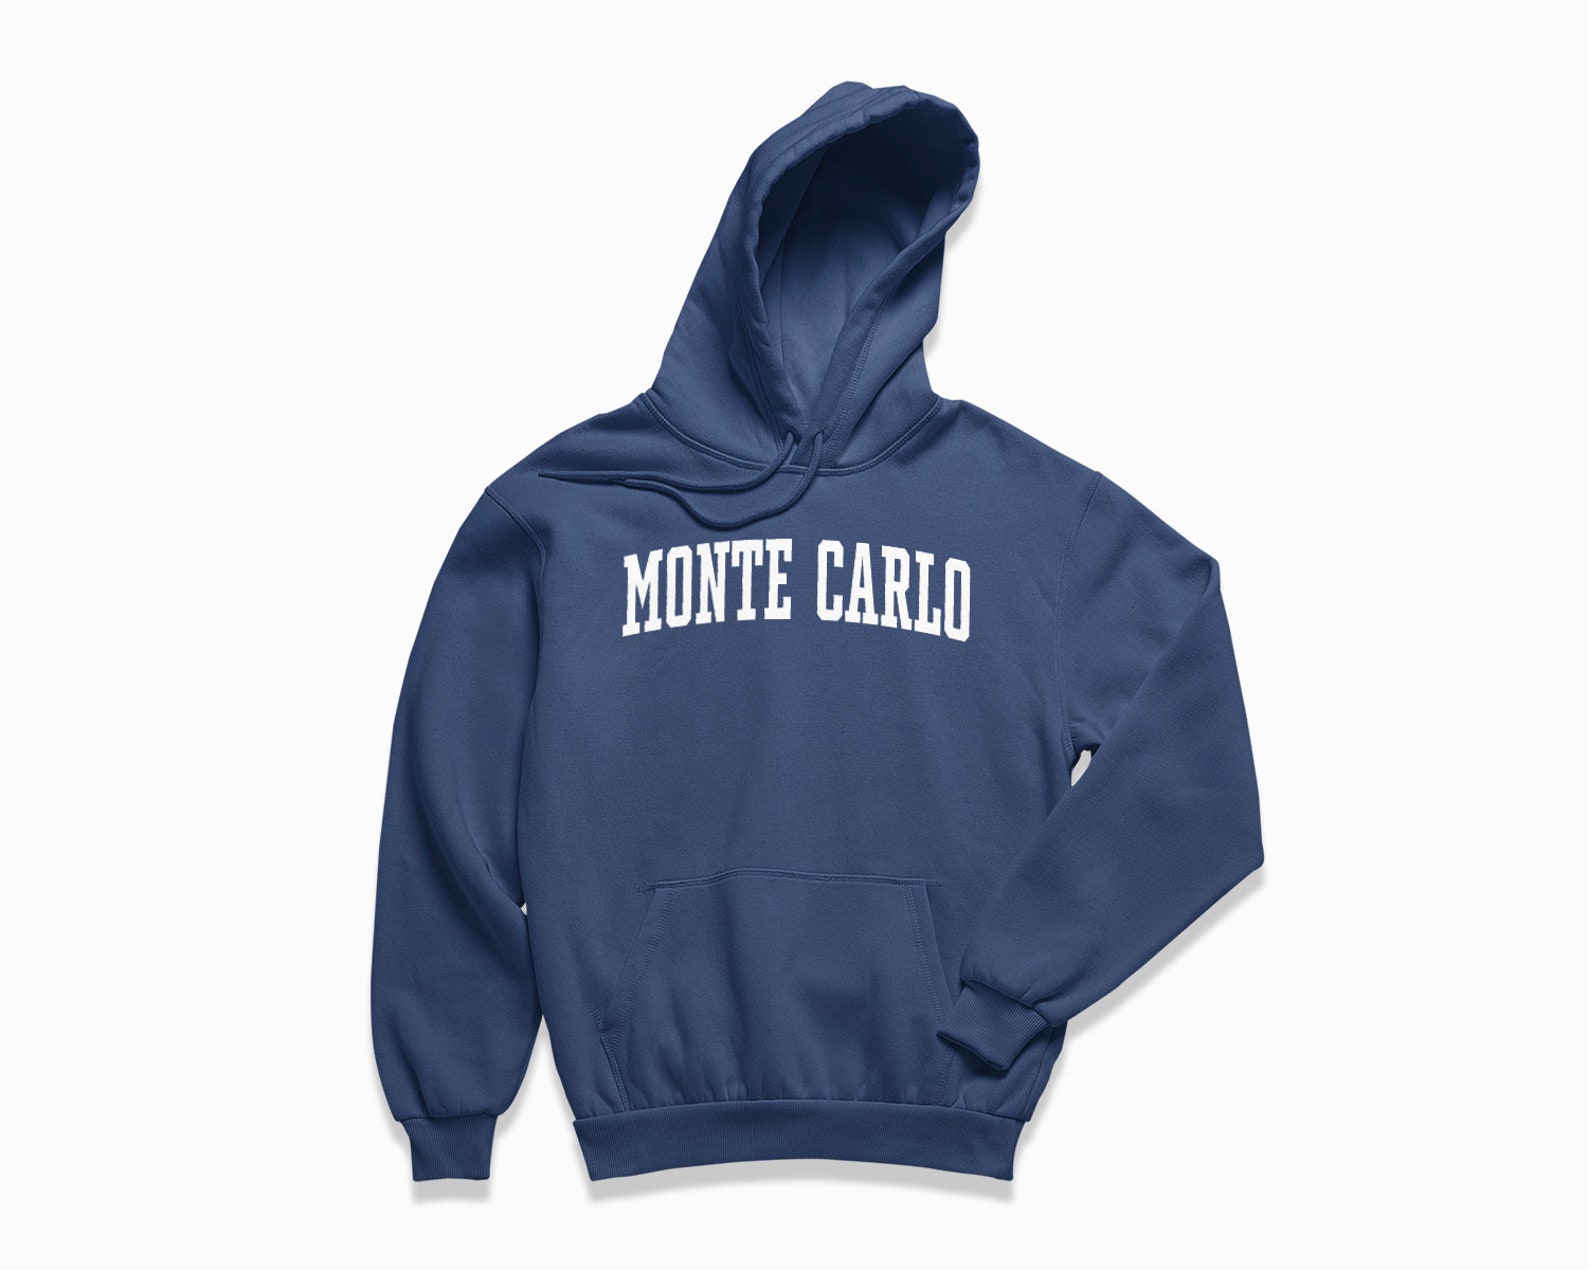 Monte Carlo Hoodie: Monte Carlo Hooded Sweatshirt / College | Etsy